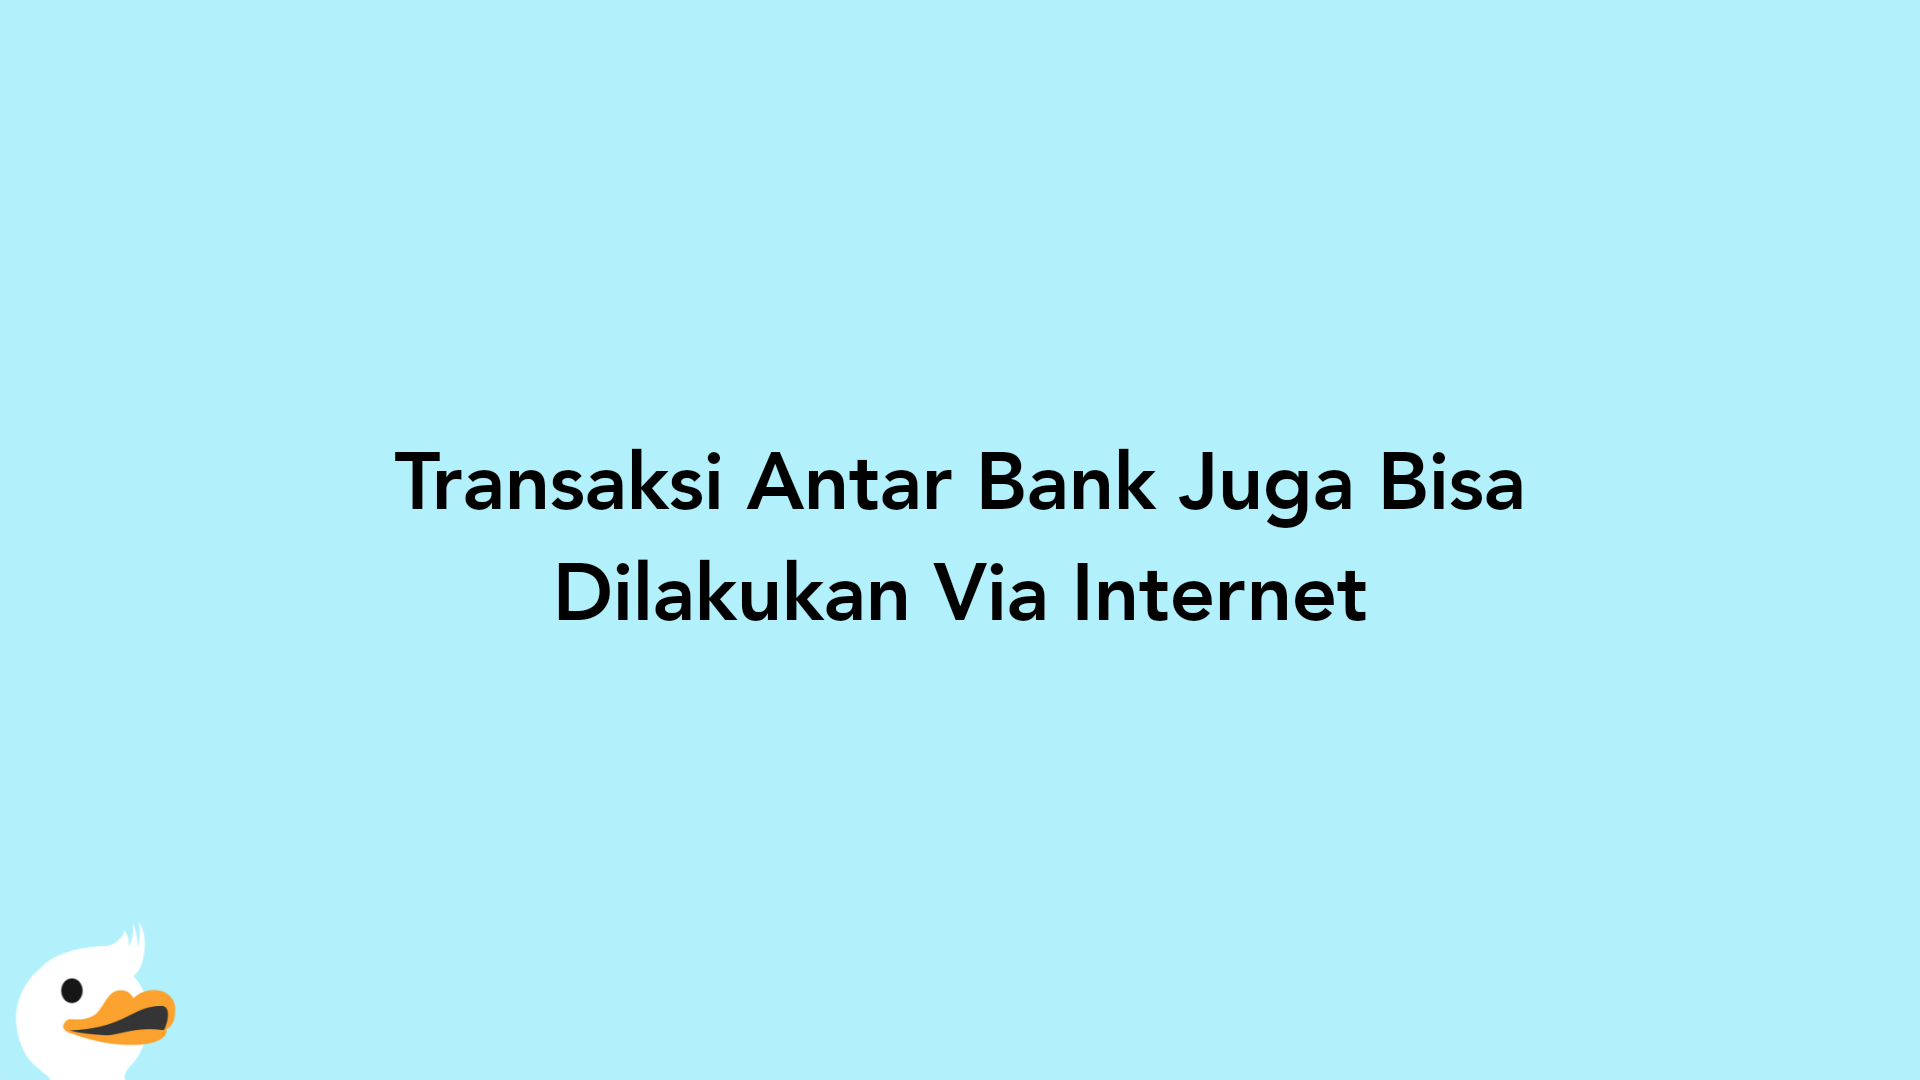 Transaksi Antar Bank Juga Bisa Dilakukan Via Internet